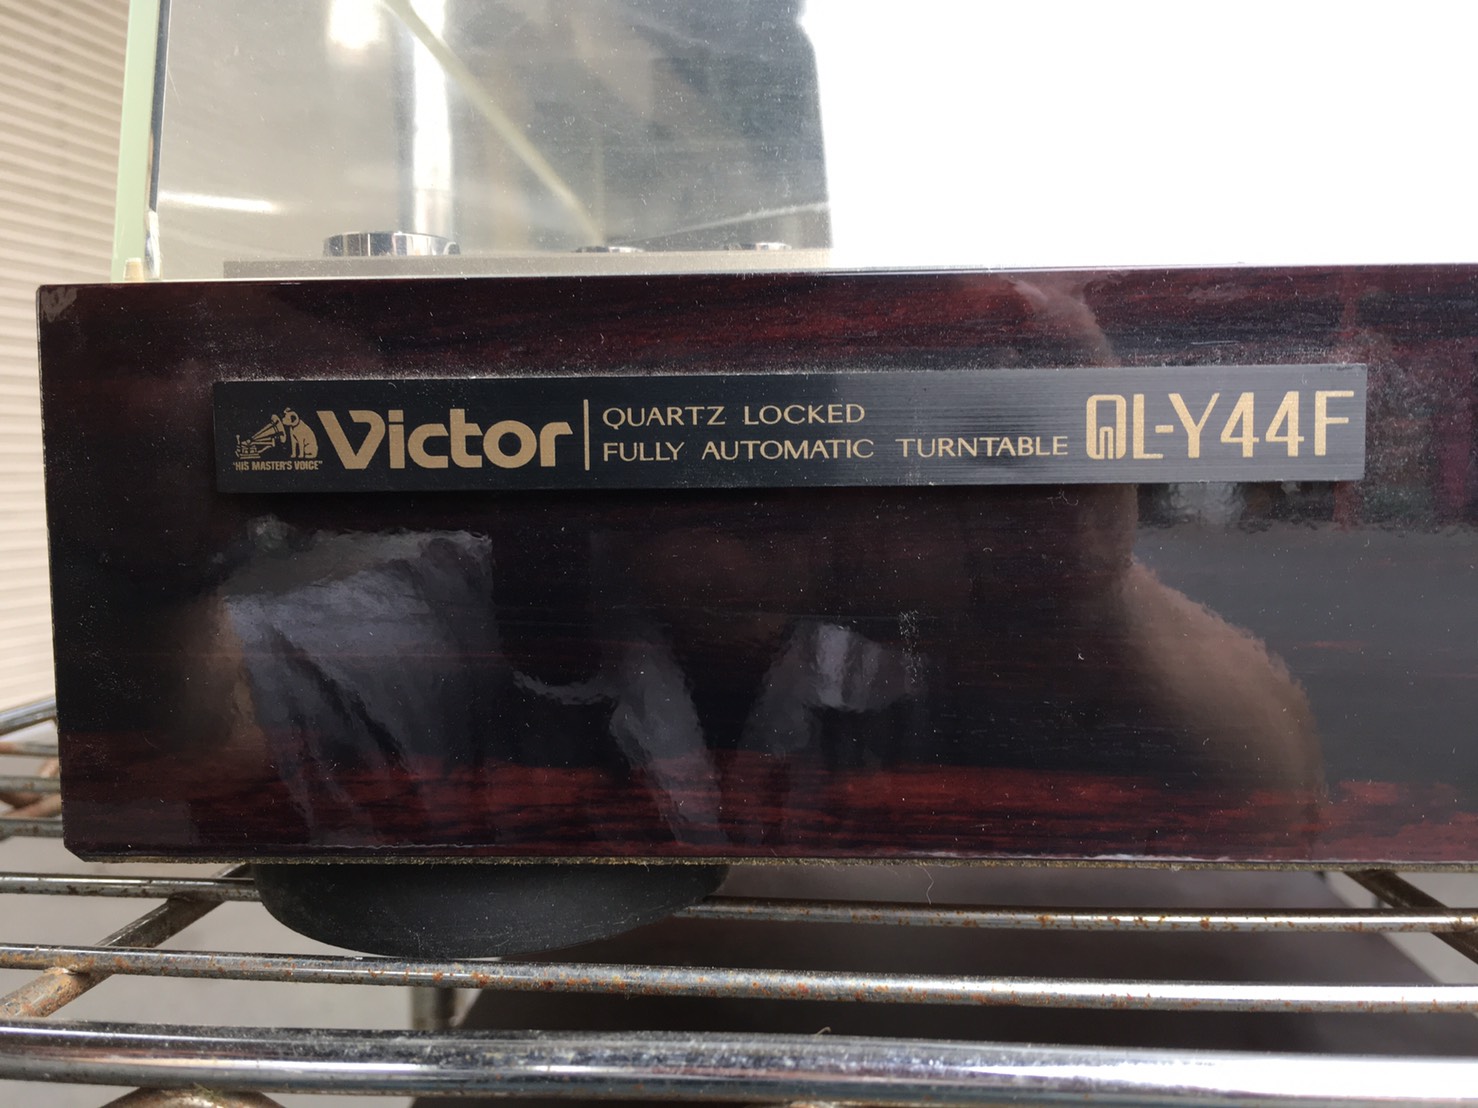 VICTOR（ビクター）のレコードプレイヤー（QL-Y44F）